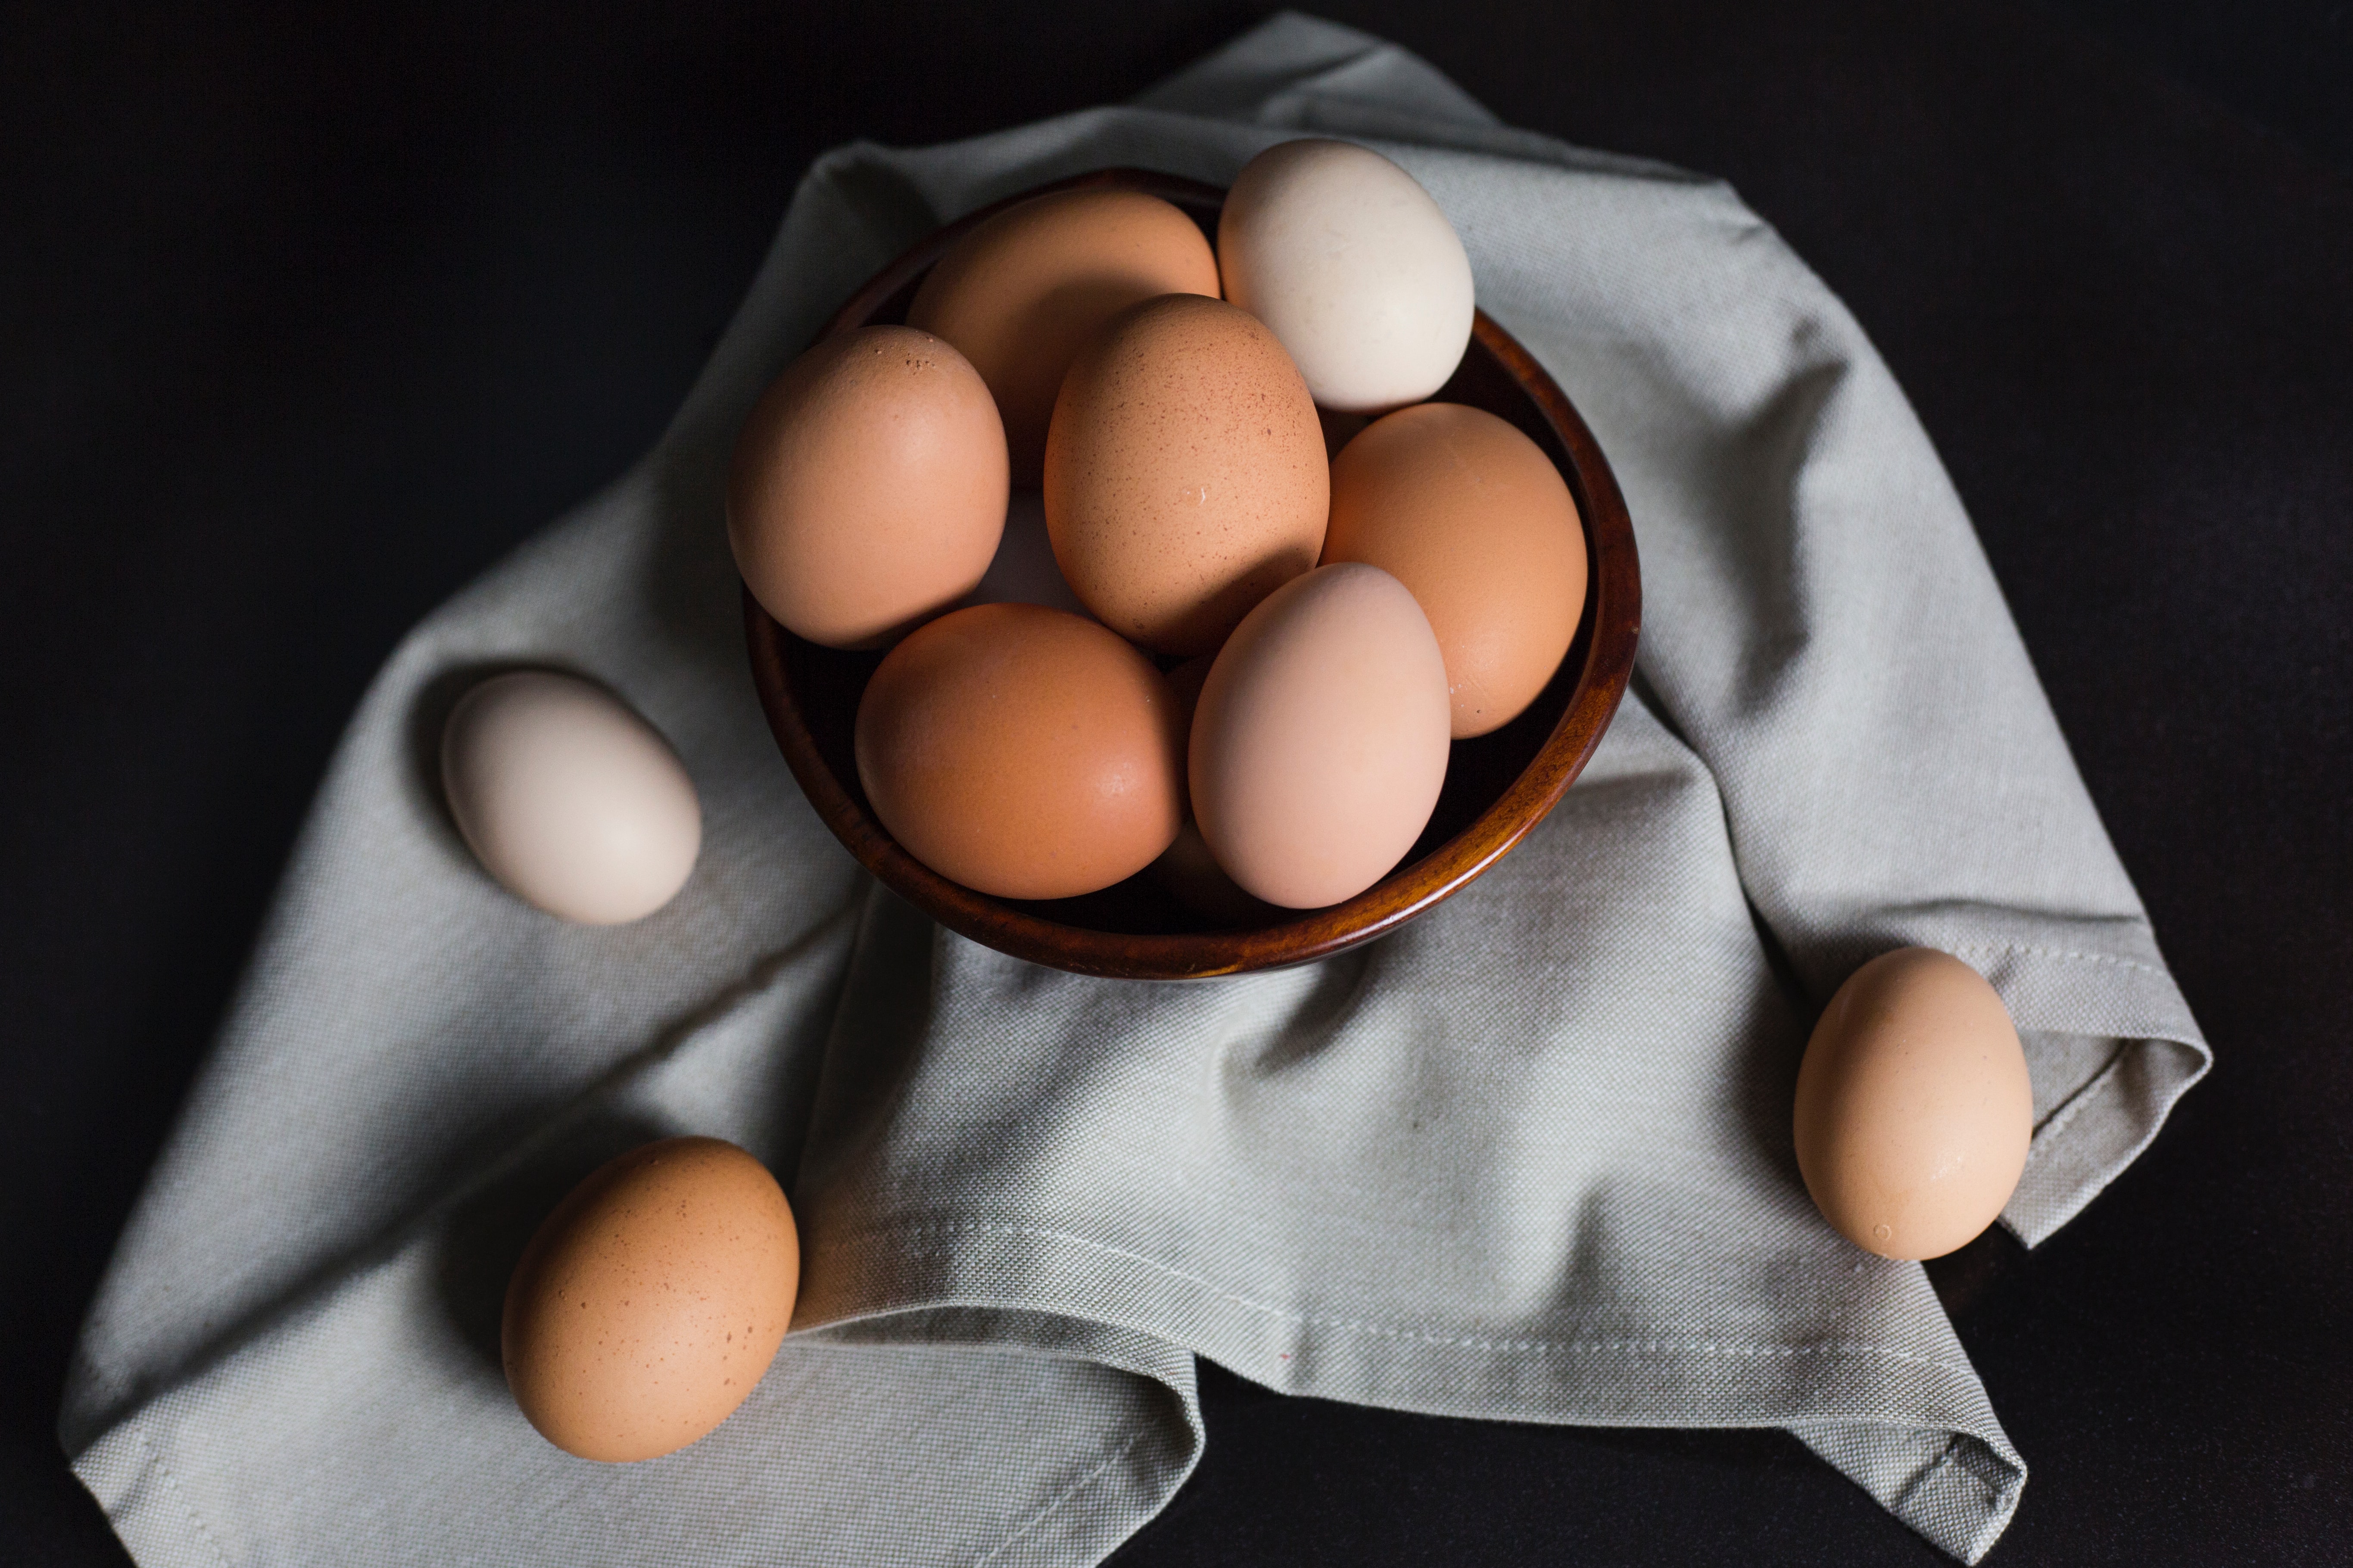 Trik kojim ćemo brže da skuvamo i oljuštimo jaja: Poteban vam je predmet koji svi imamo u kući